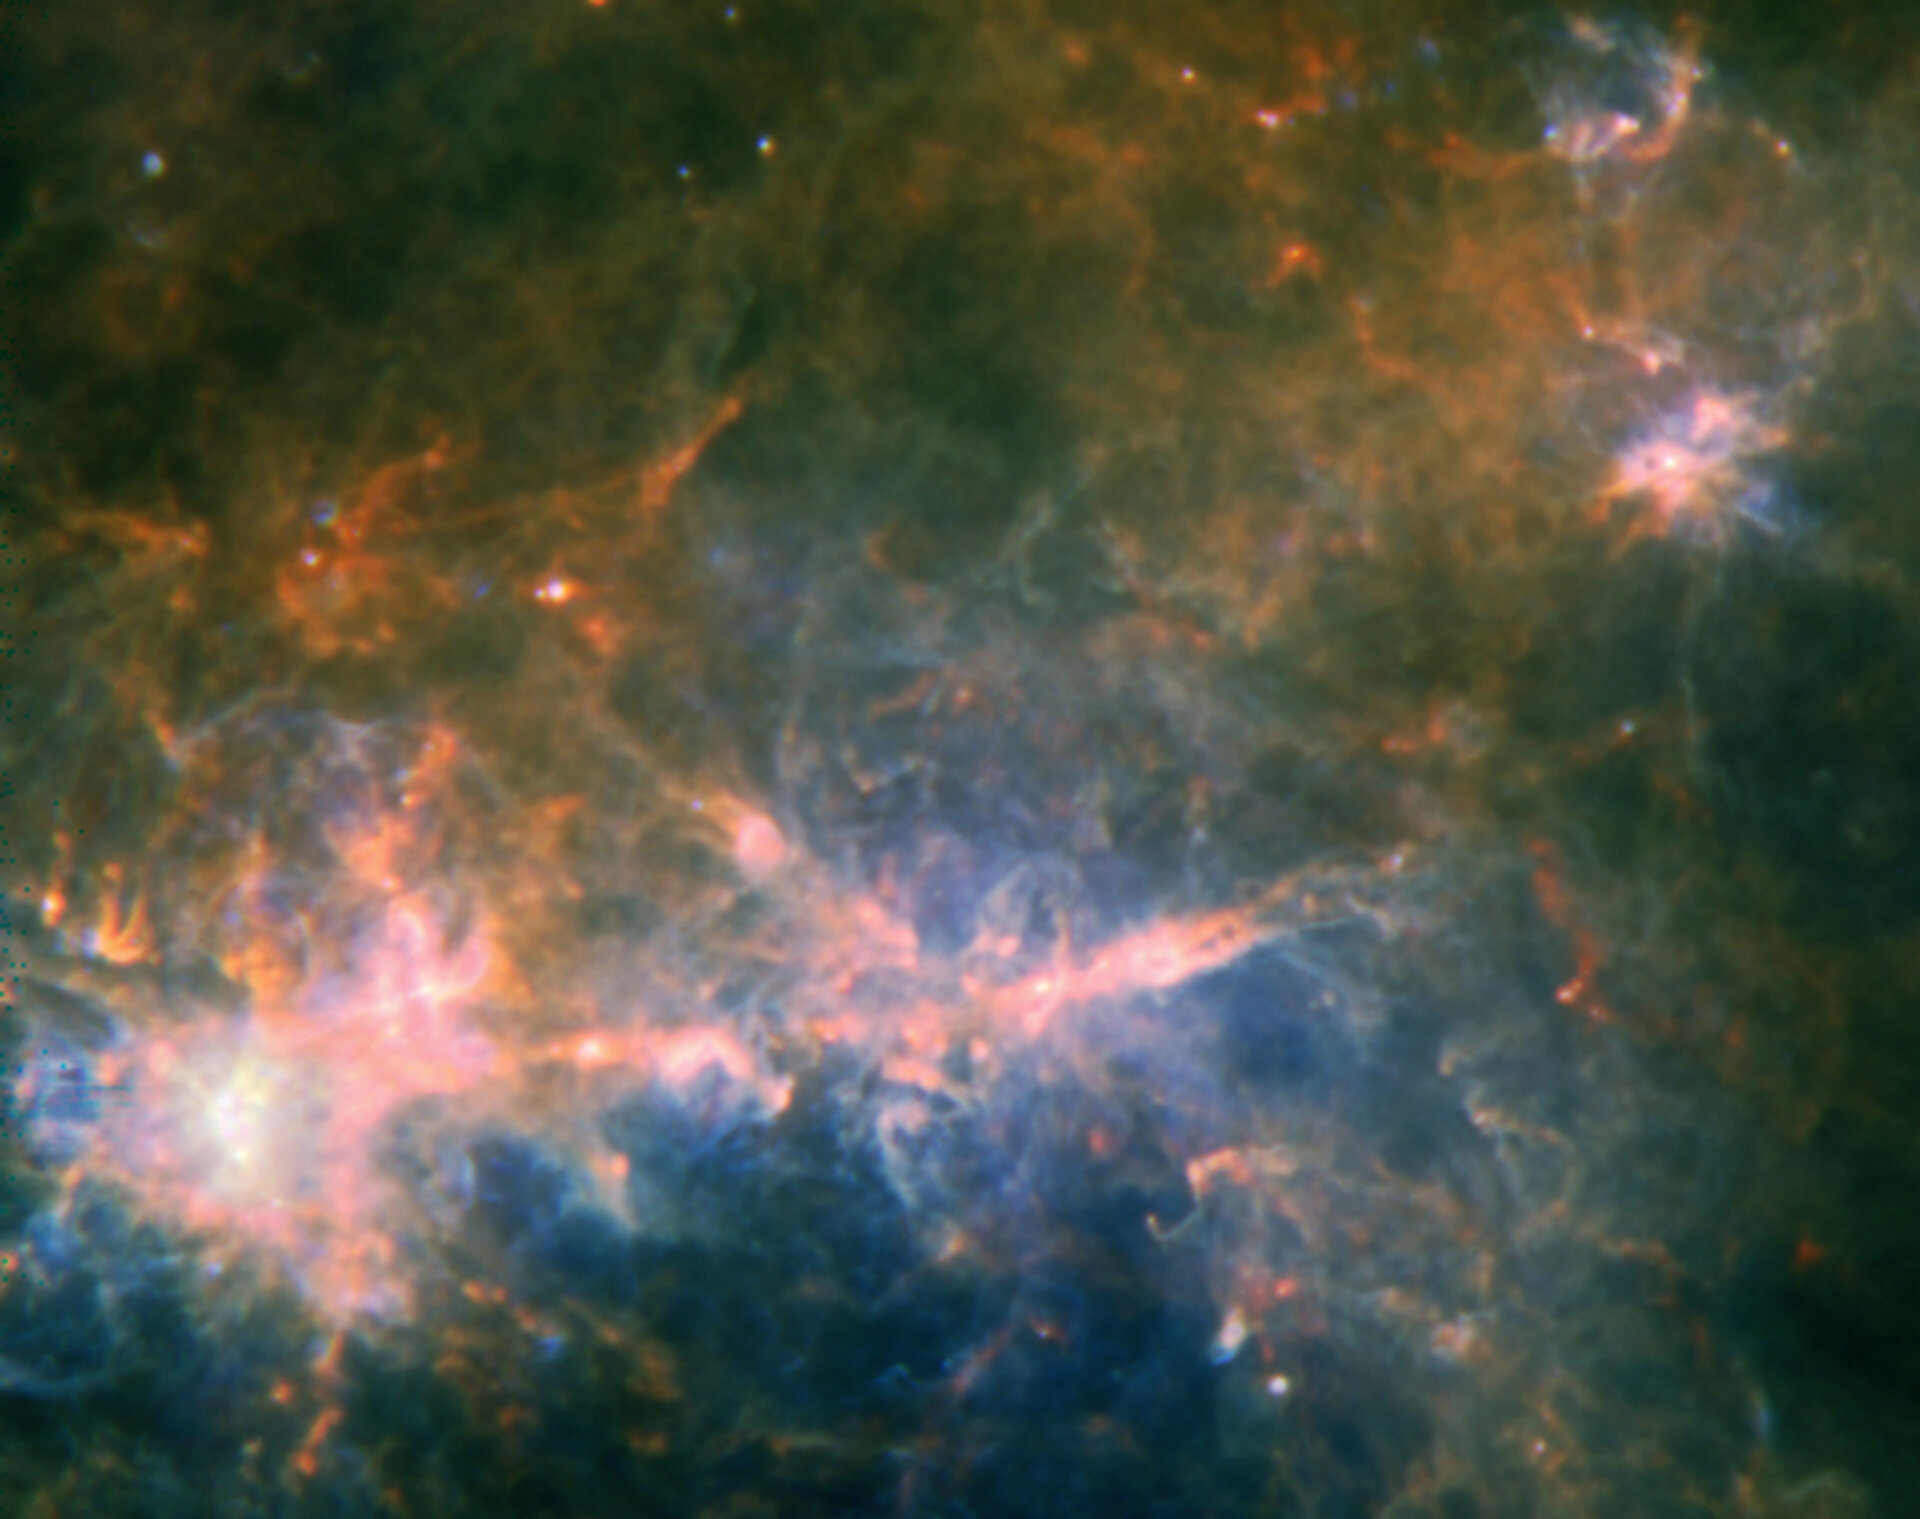 Herschel’s view of G49